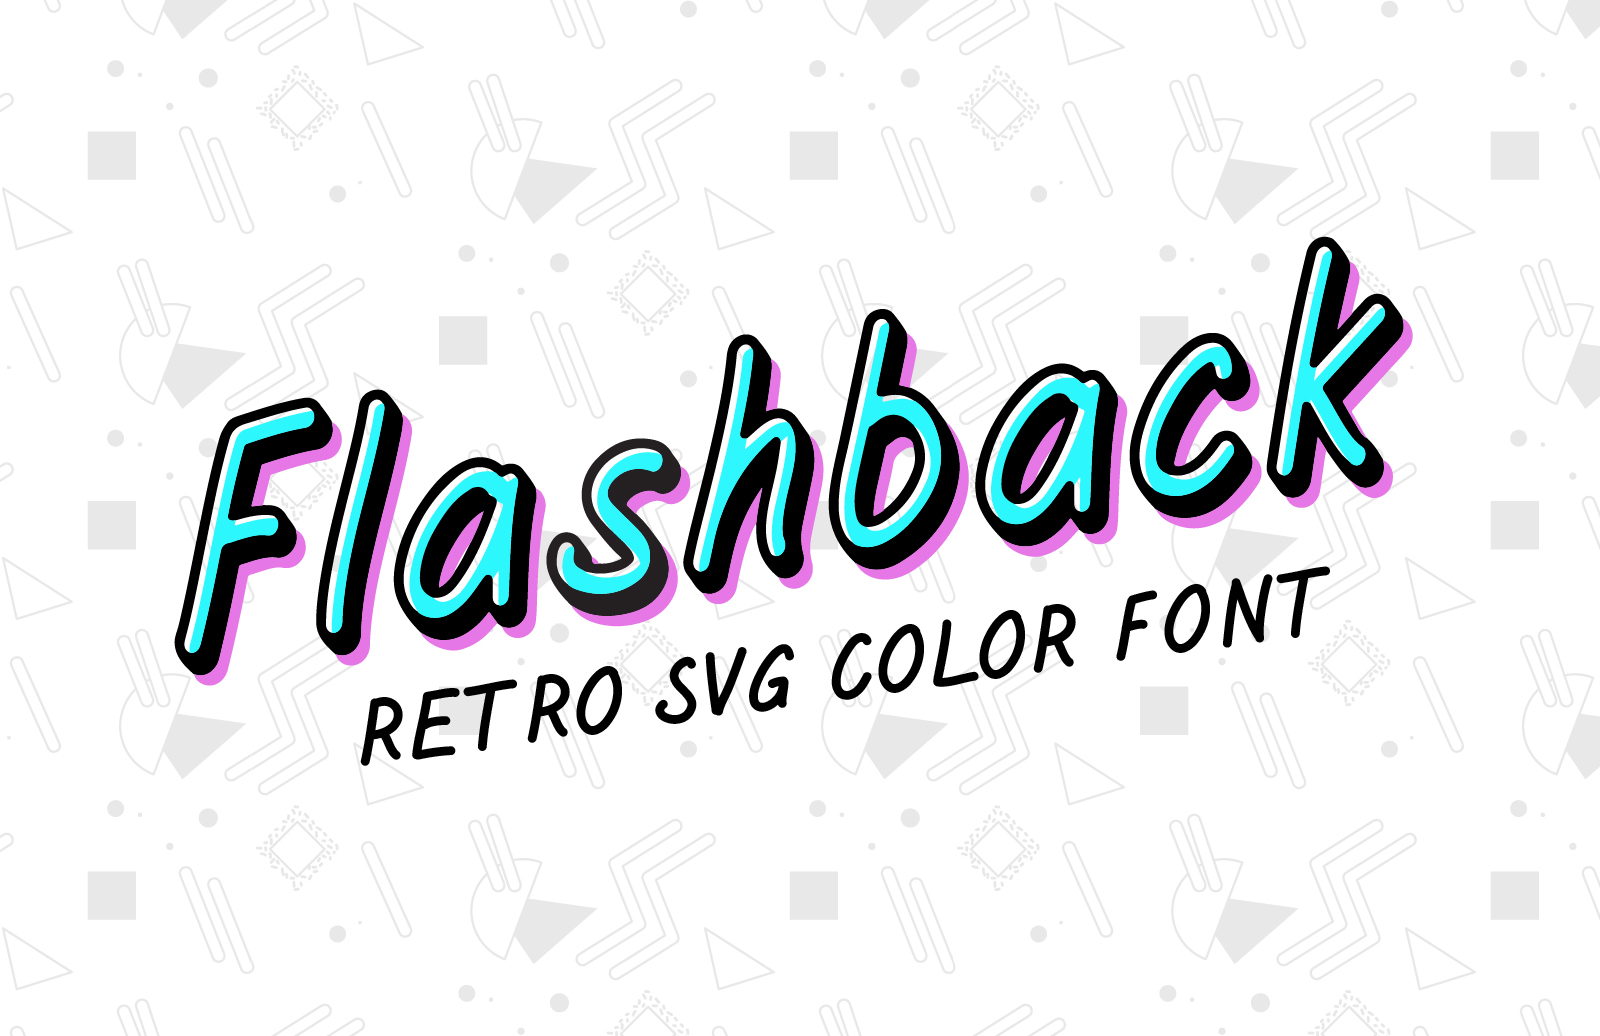 Download Flashback Retro Svg Color Font Medialoot